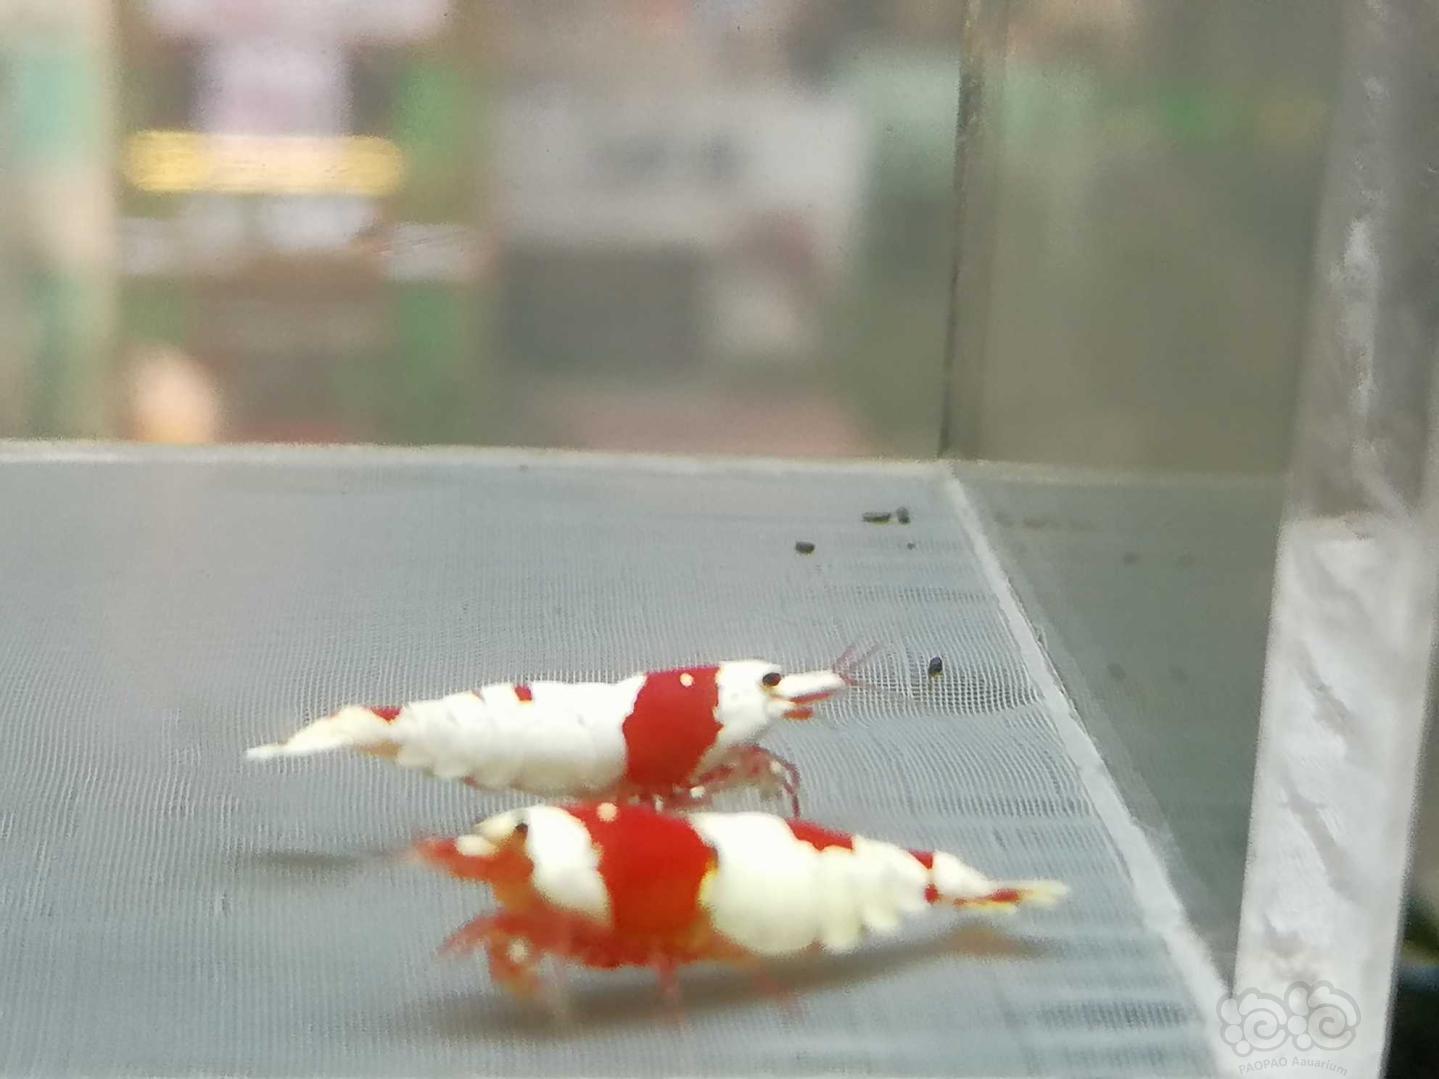 【虾】2020-07-21#RMB拍卖#红白纯血水晶虾一份2只-图9